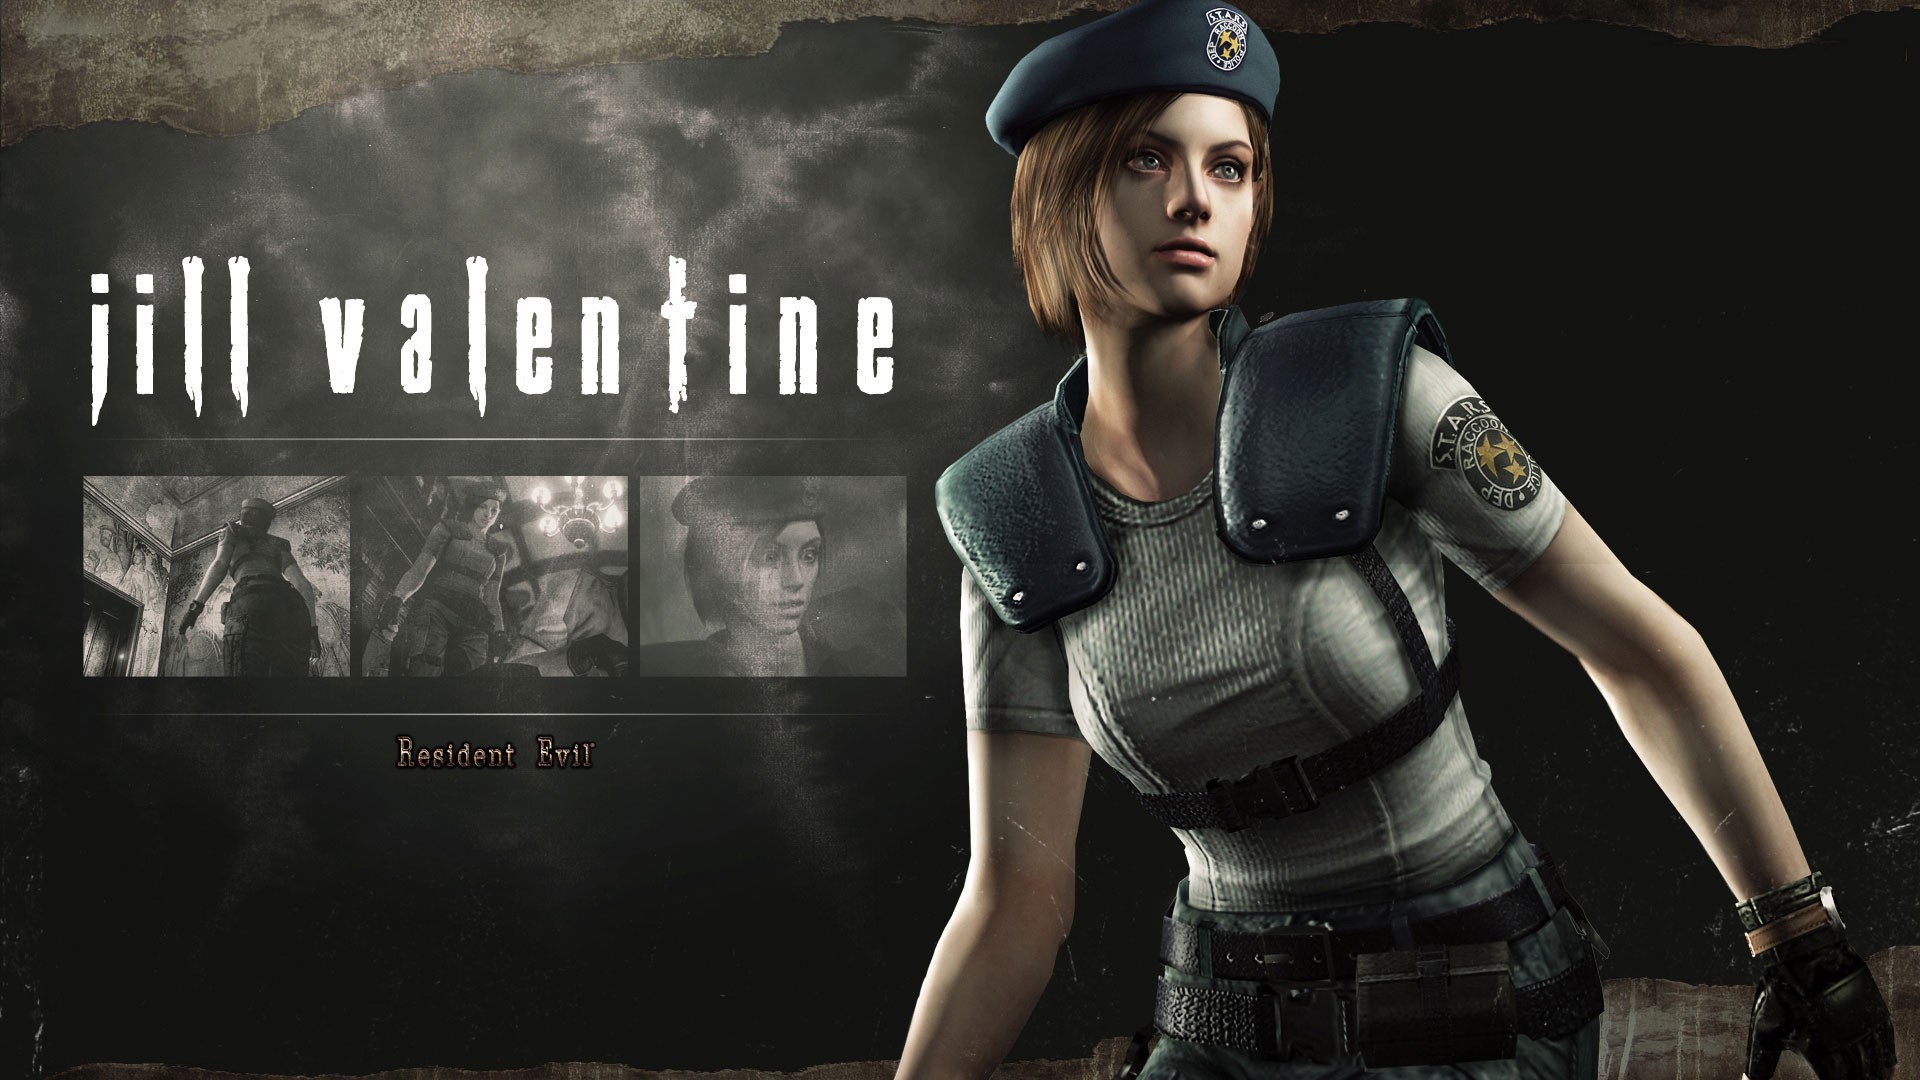 Resident Evil Jill Valentine Wallpaper Image